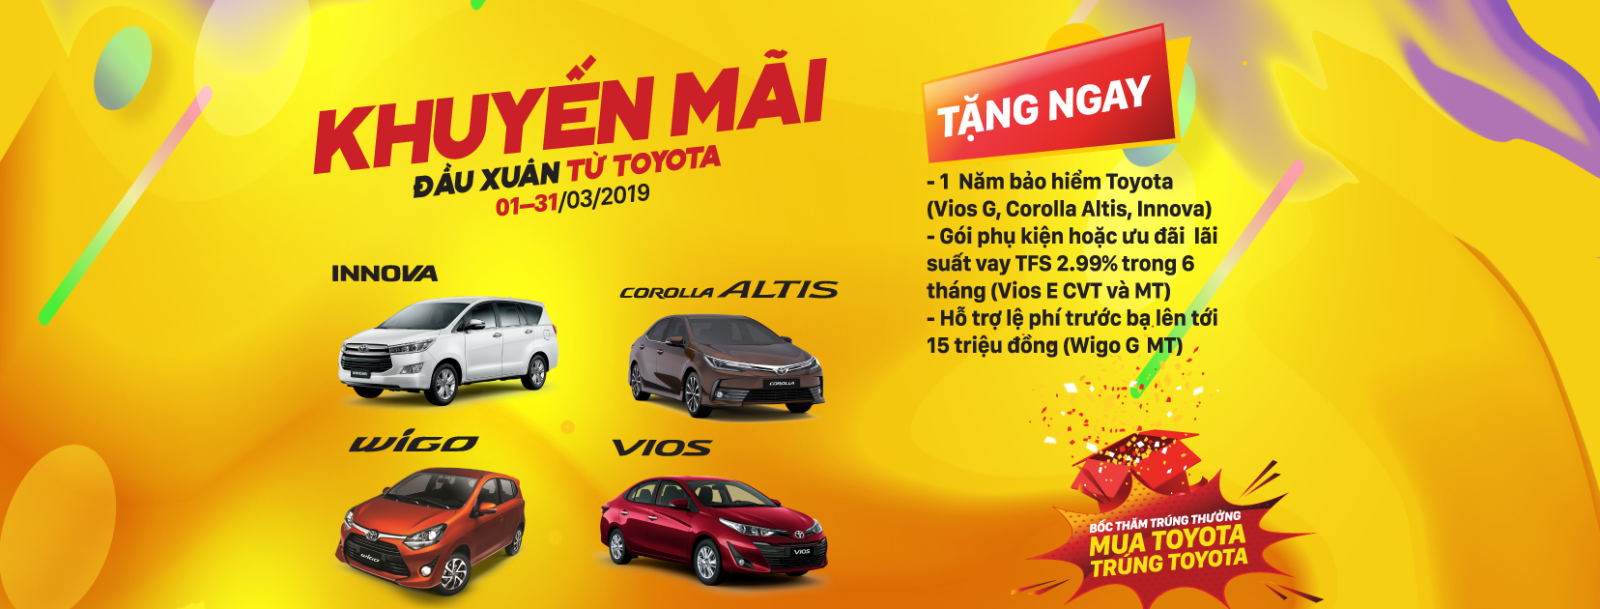 Khuyến mãi đầu xuân từ Toyota cho khách hàng mua xe Vios,Innova và Corolla Altis, Wigo G MT trong tháng 3/2019